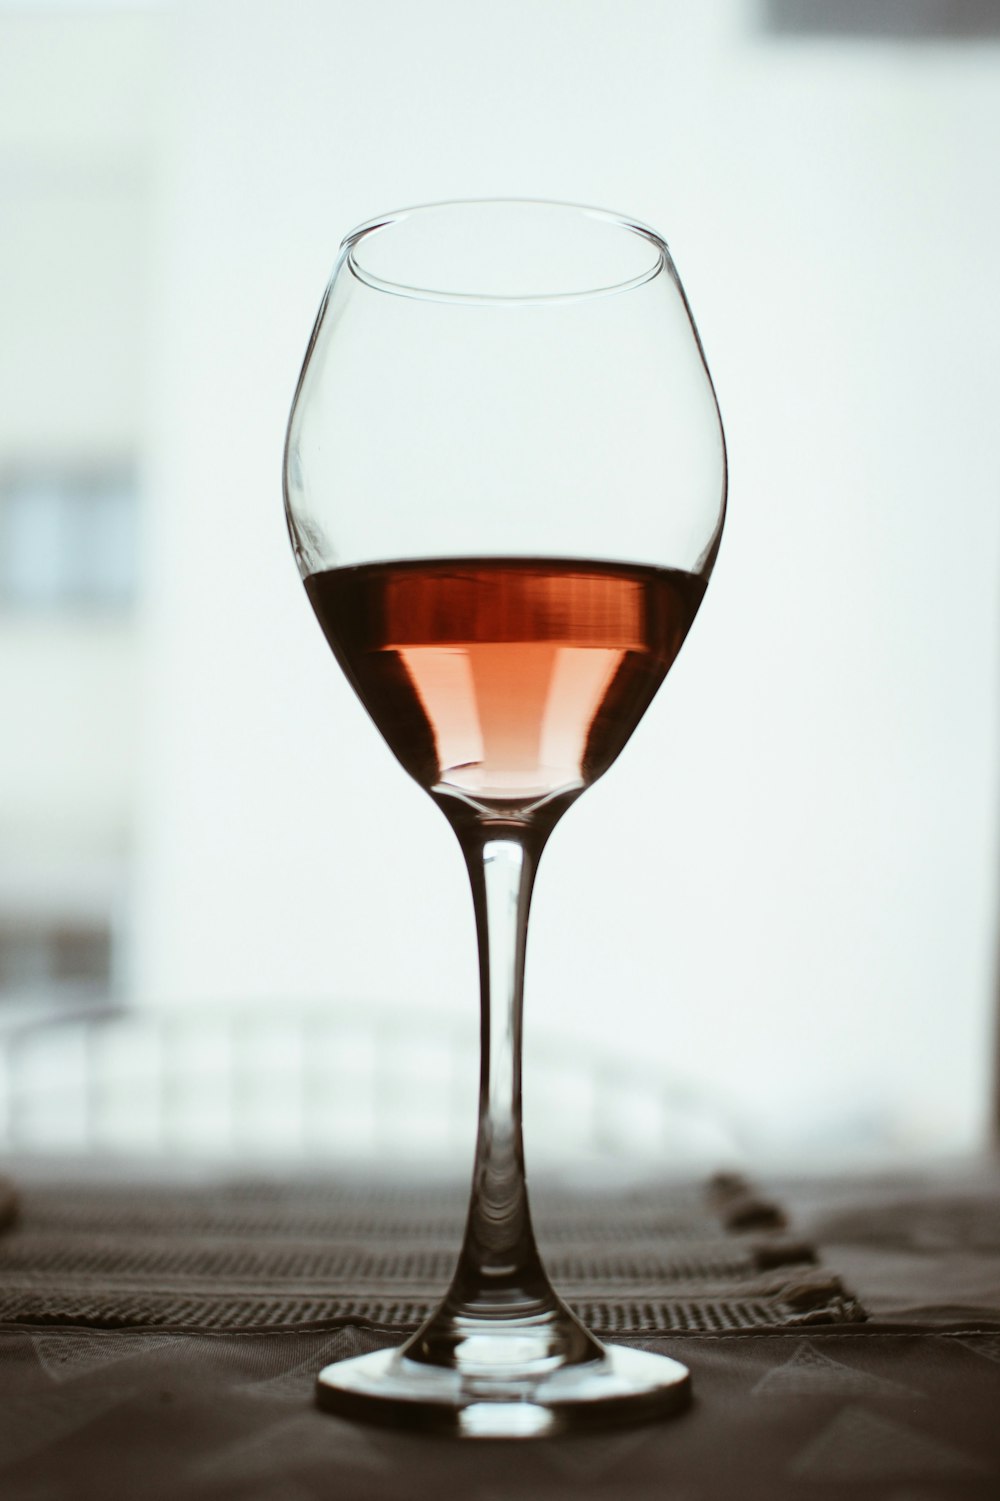 맑은 긴 줄기 와인 잔의 선택적 초점 사진